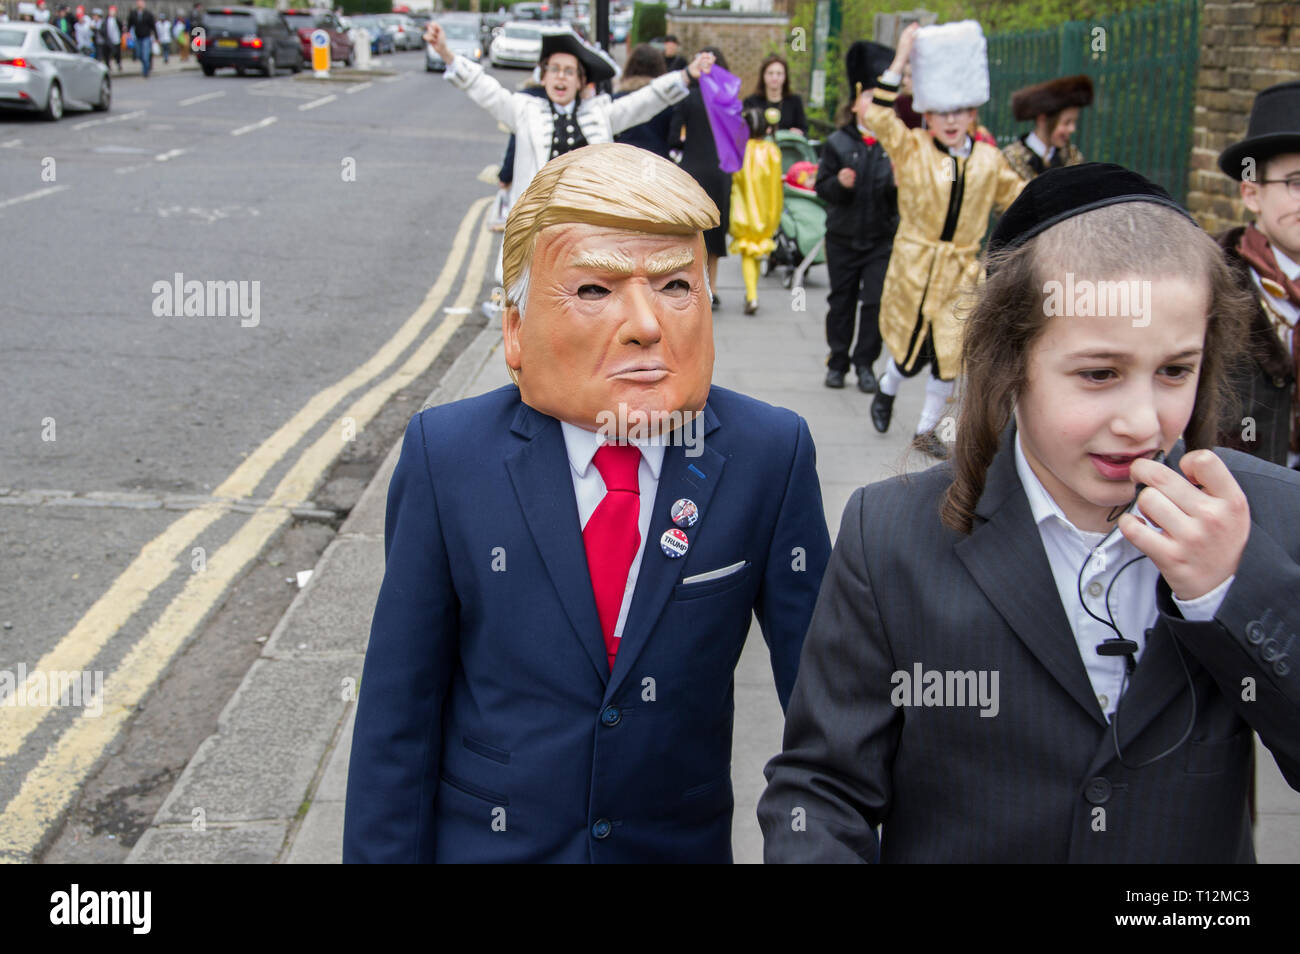 Junge Marching in Donald Trump Maske und Anzug Jacke für den Jüdischen Feiertag Purim in Stamford Hill, London, 21. März 2019, Stockfoto